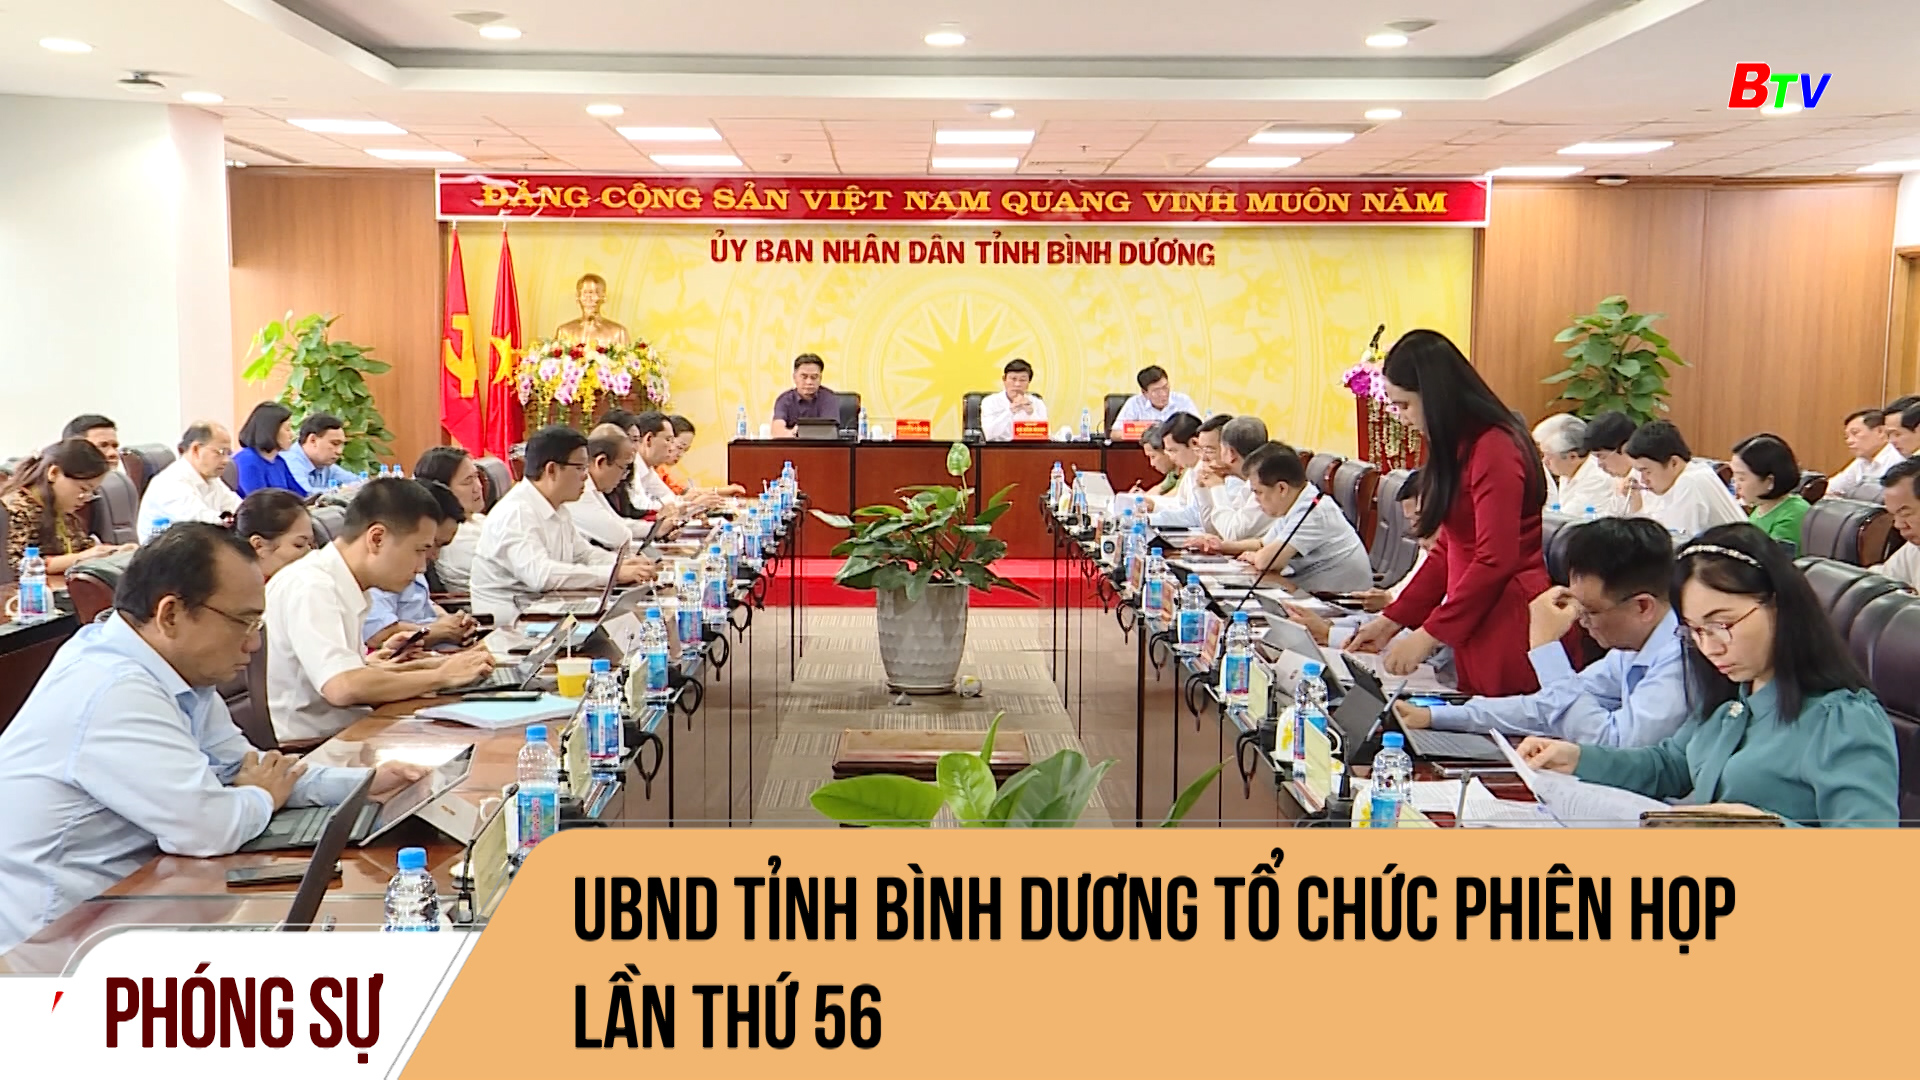 UBND tỉnh Bình Dương tổ chức phiên họp lần thứ 56	